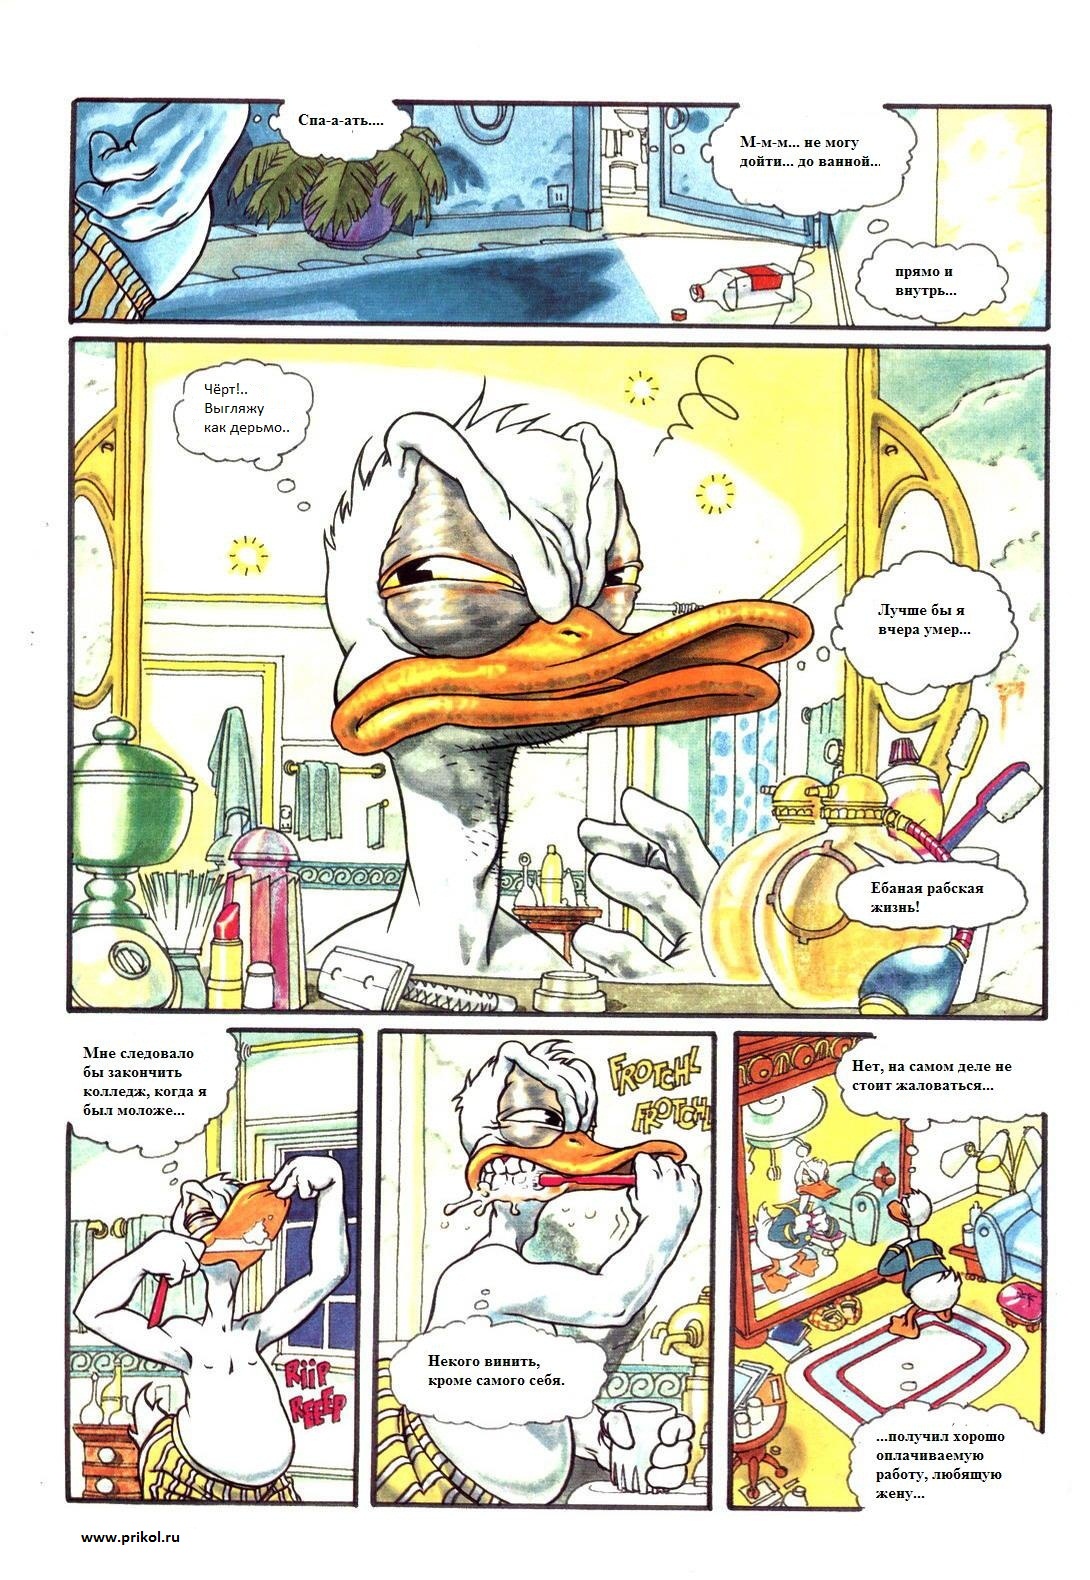 duck-tales-comics-03